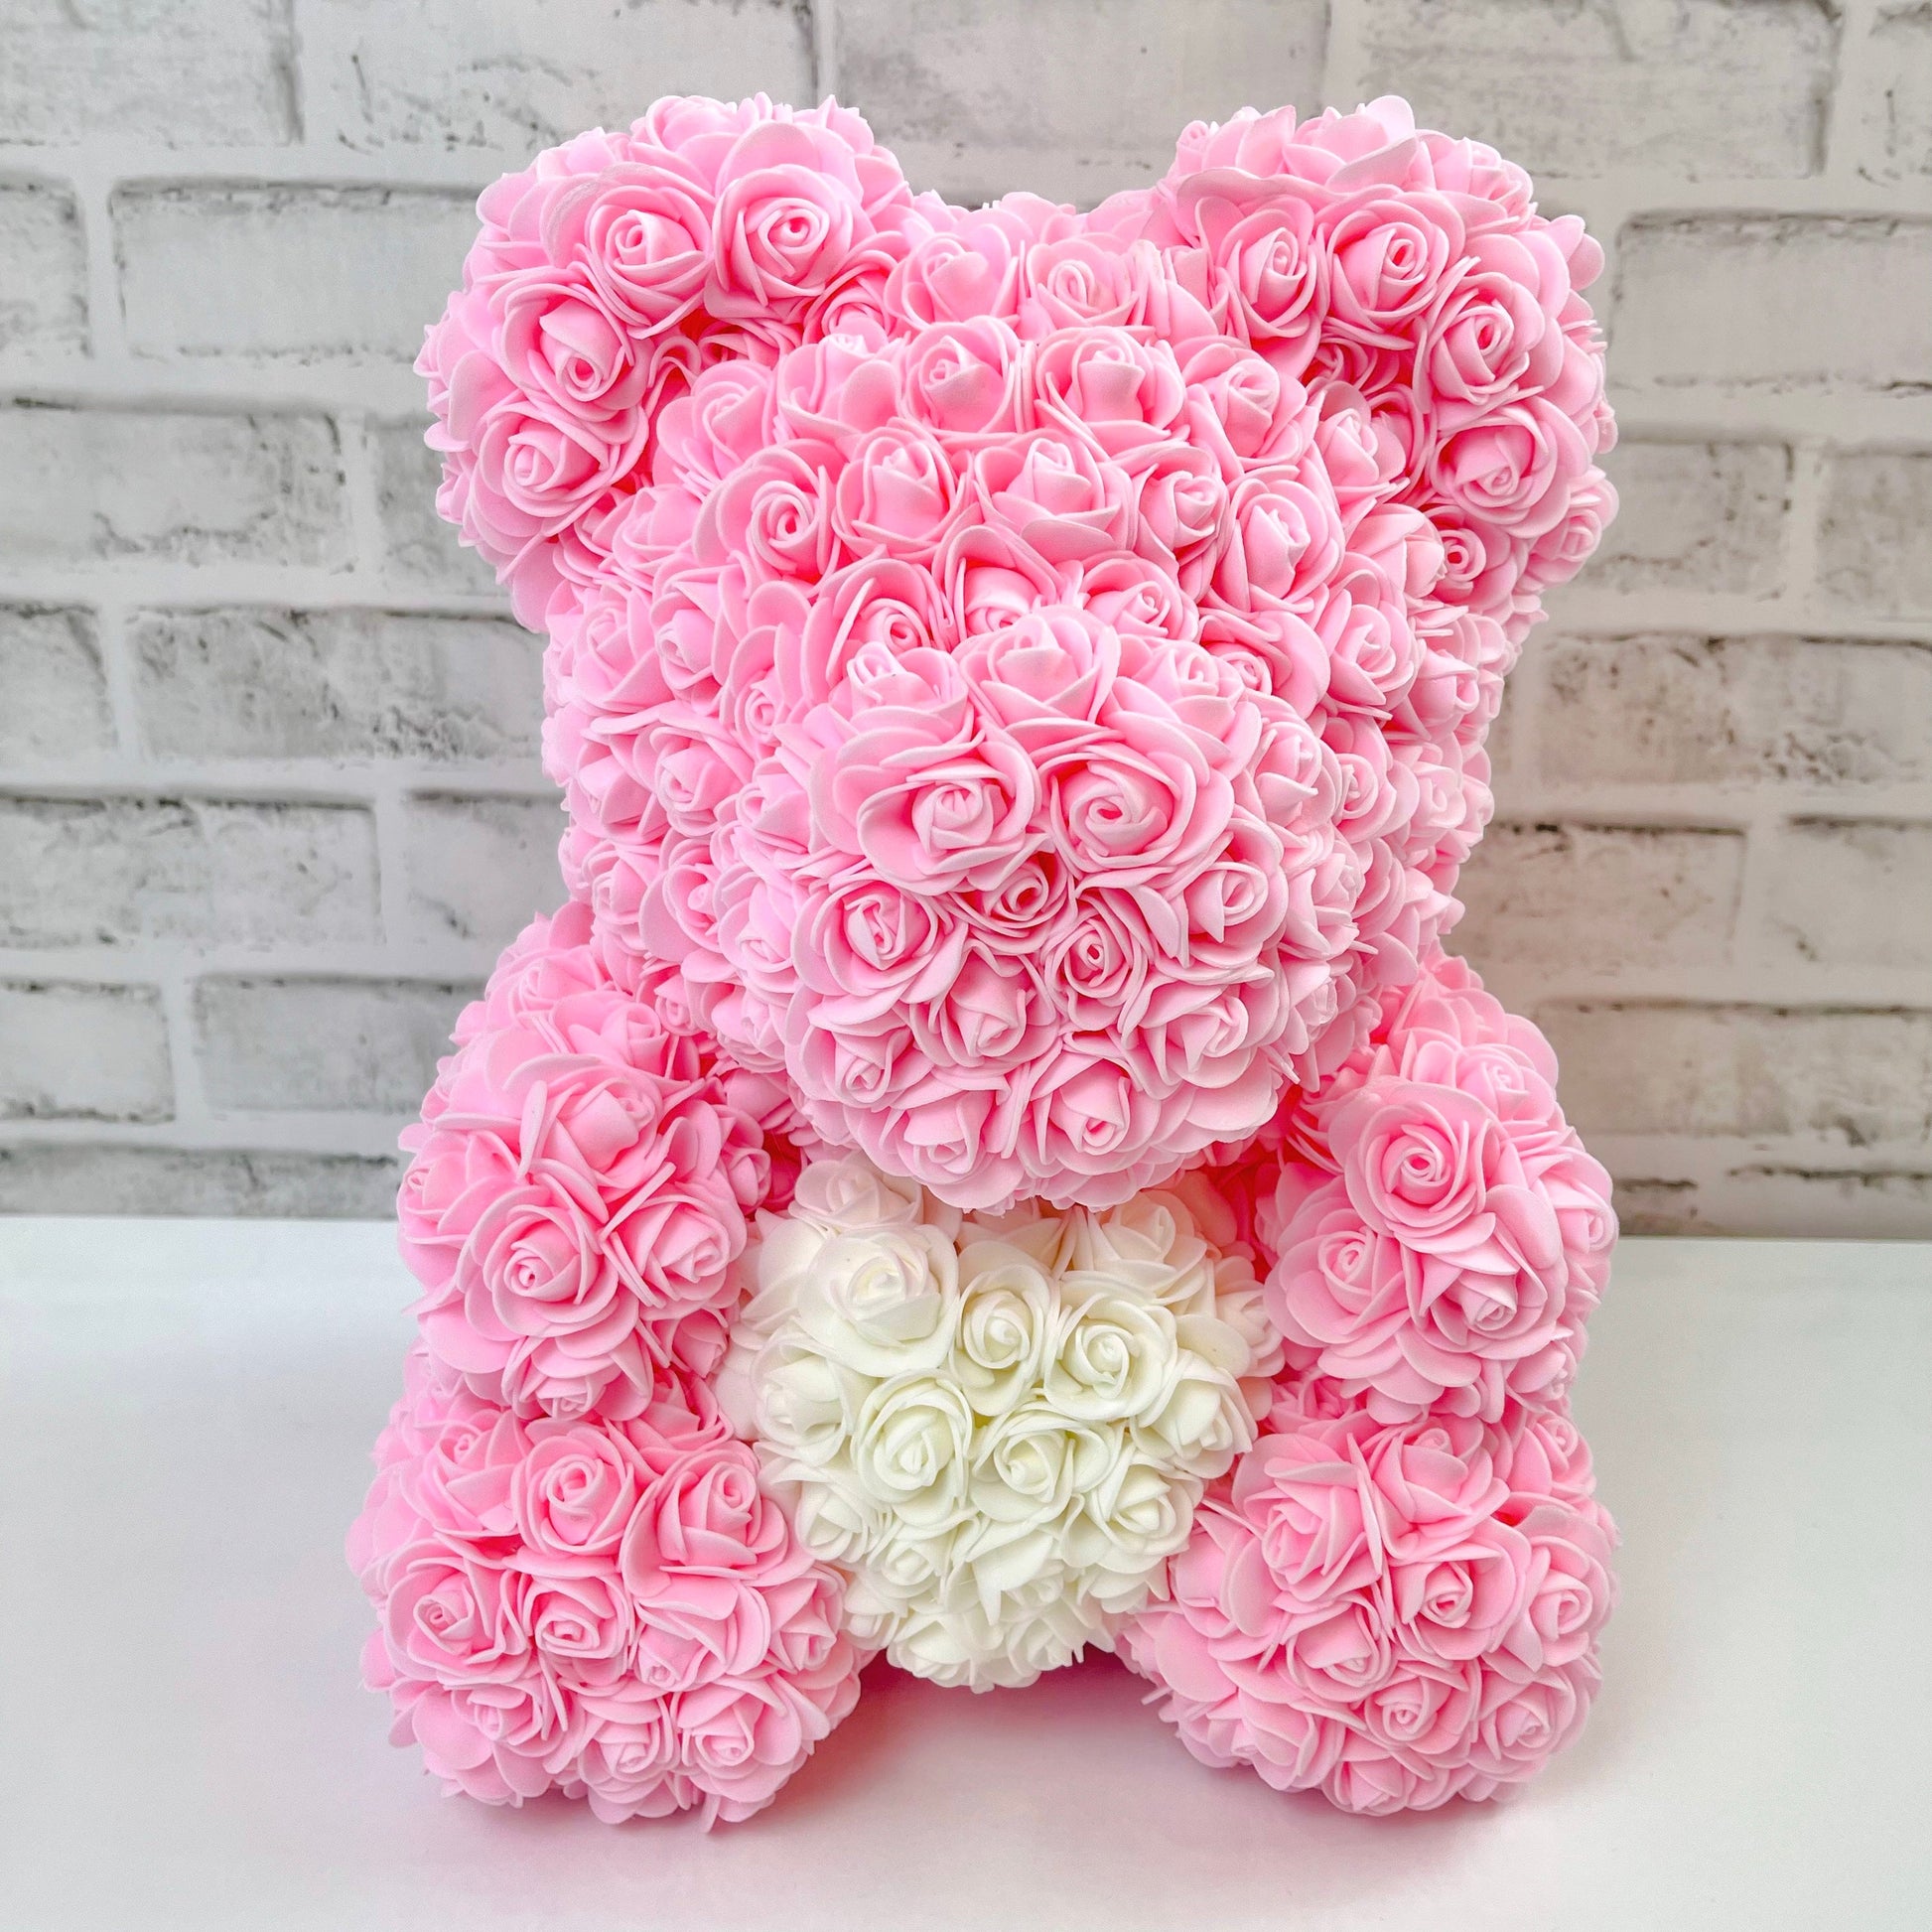 Rose Bear - Forever Pink Rose Teddy Bears - Gift Boxed Bears- Rose Bear divider- Light Pink Bear with White Heart